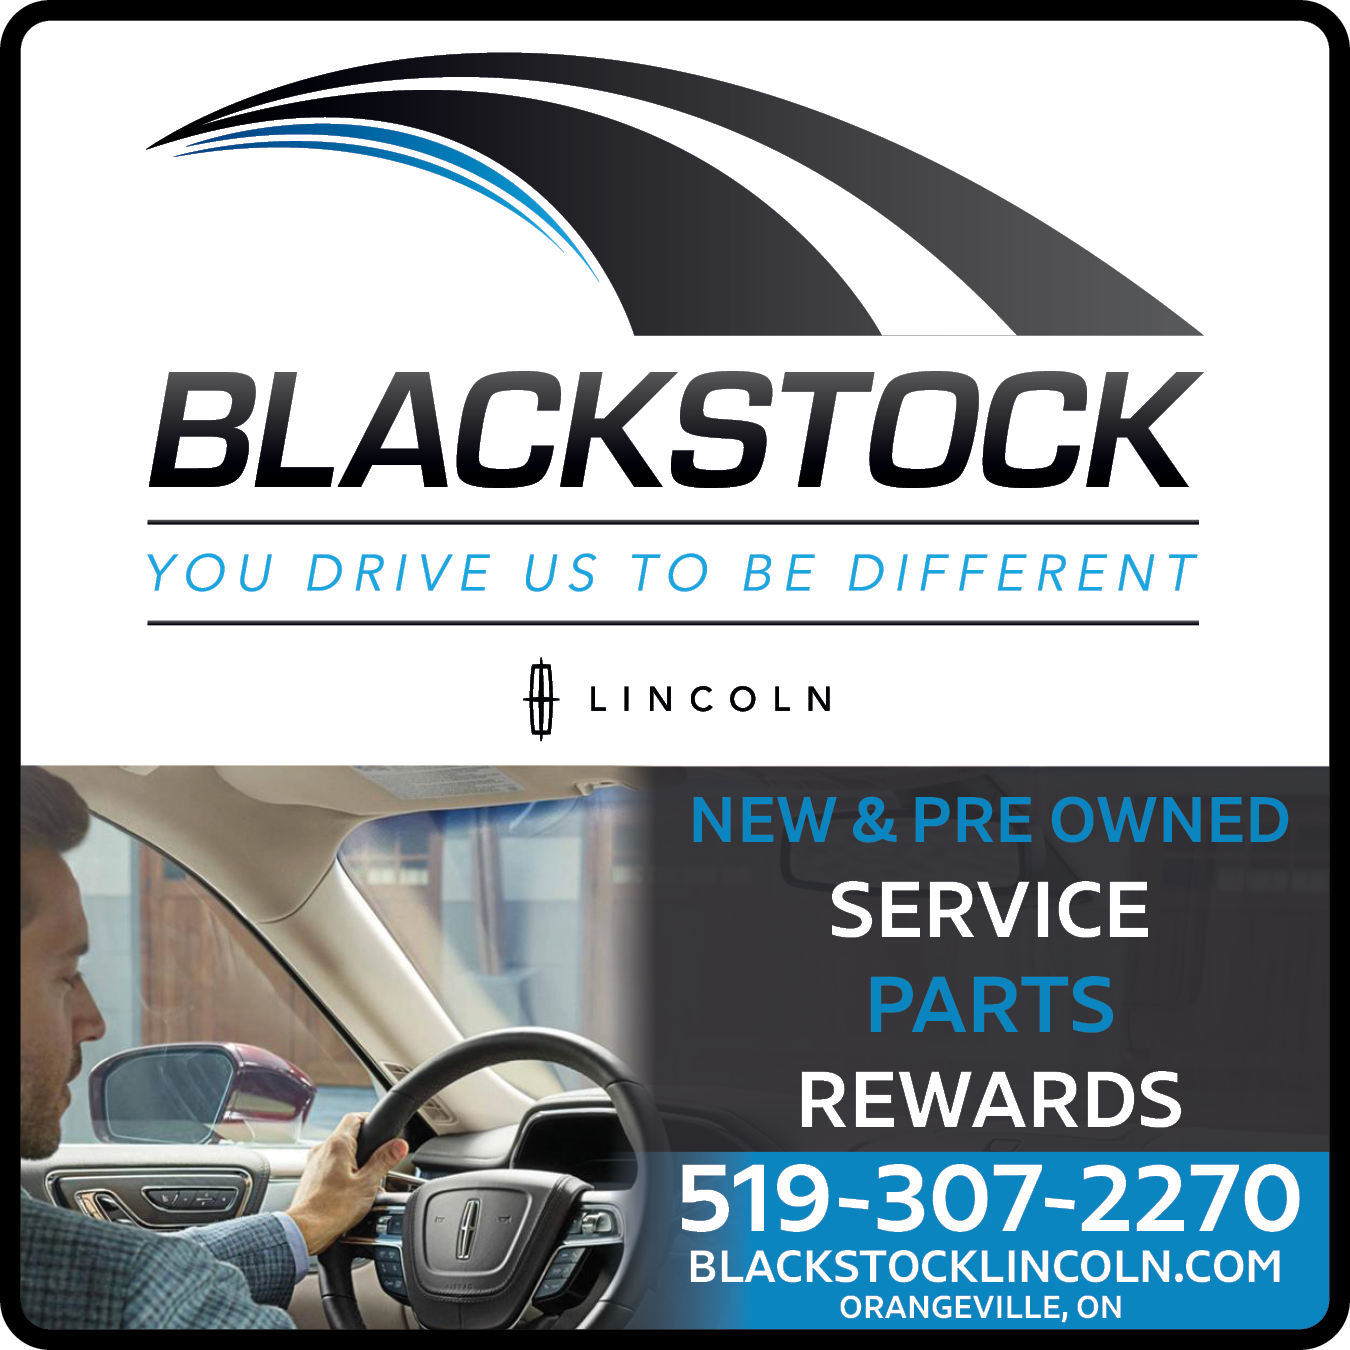 Blackstock Lincoln